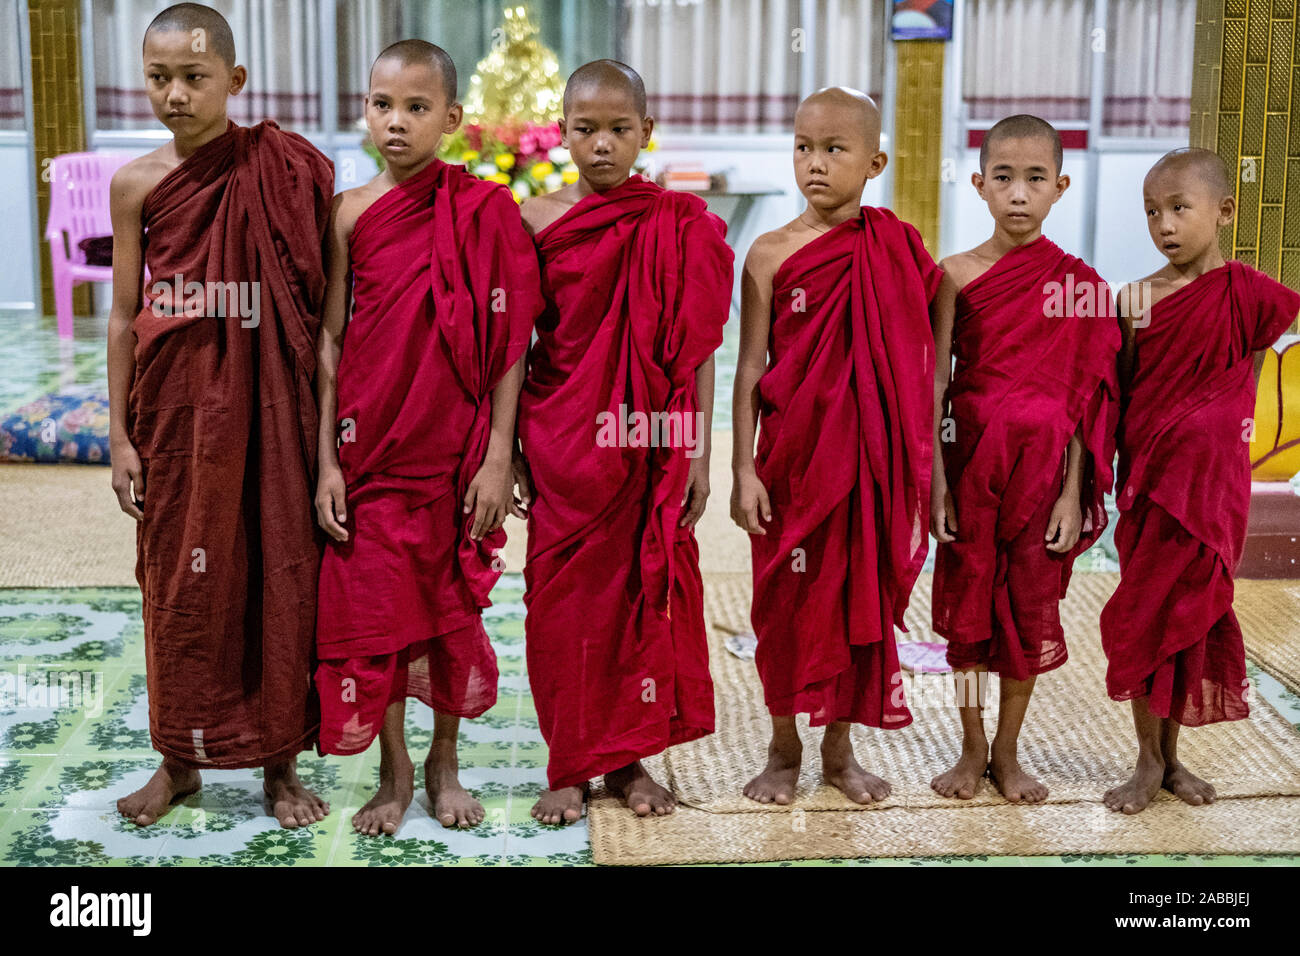 Les jeunes moines bouddhistes avec le crâne rasé et scarlet robes lors d'une ligne à un monastère le long de la rivière Chindwin au Myanmar (Birmanie) Banque D'Images